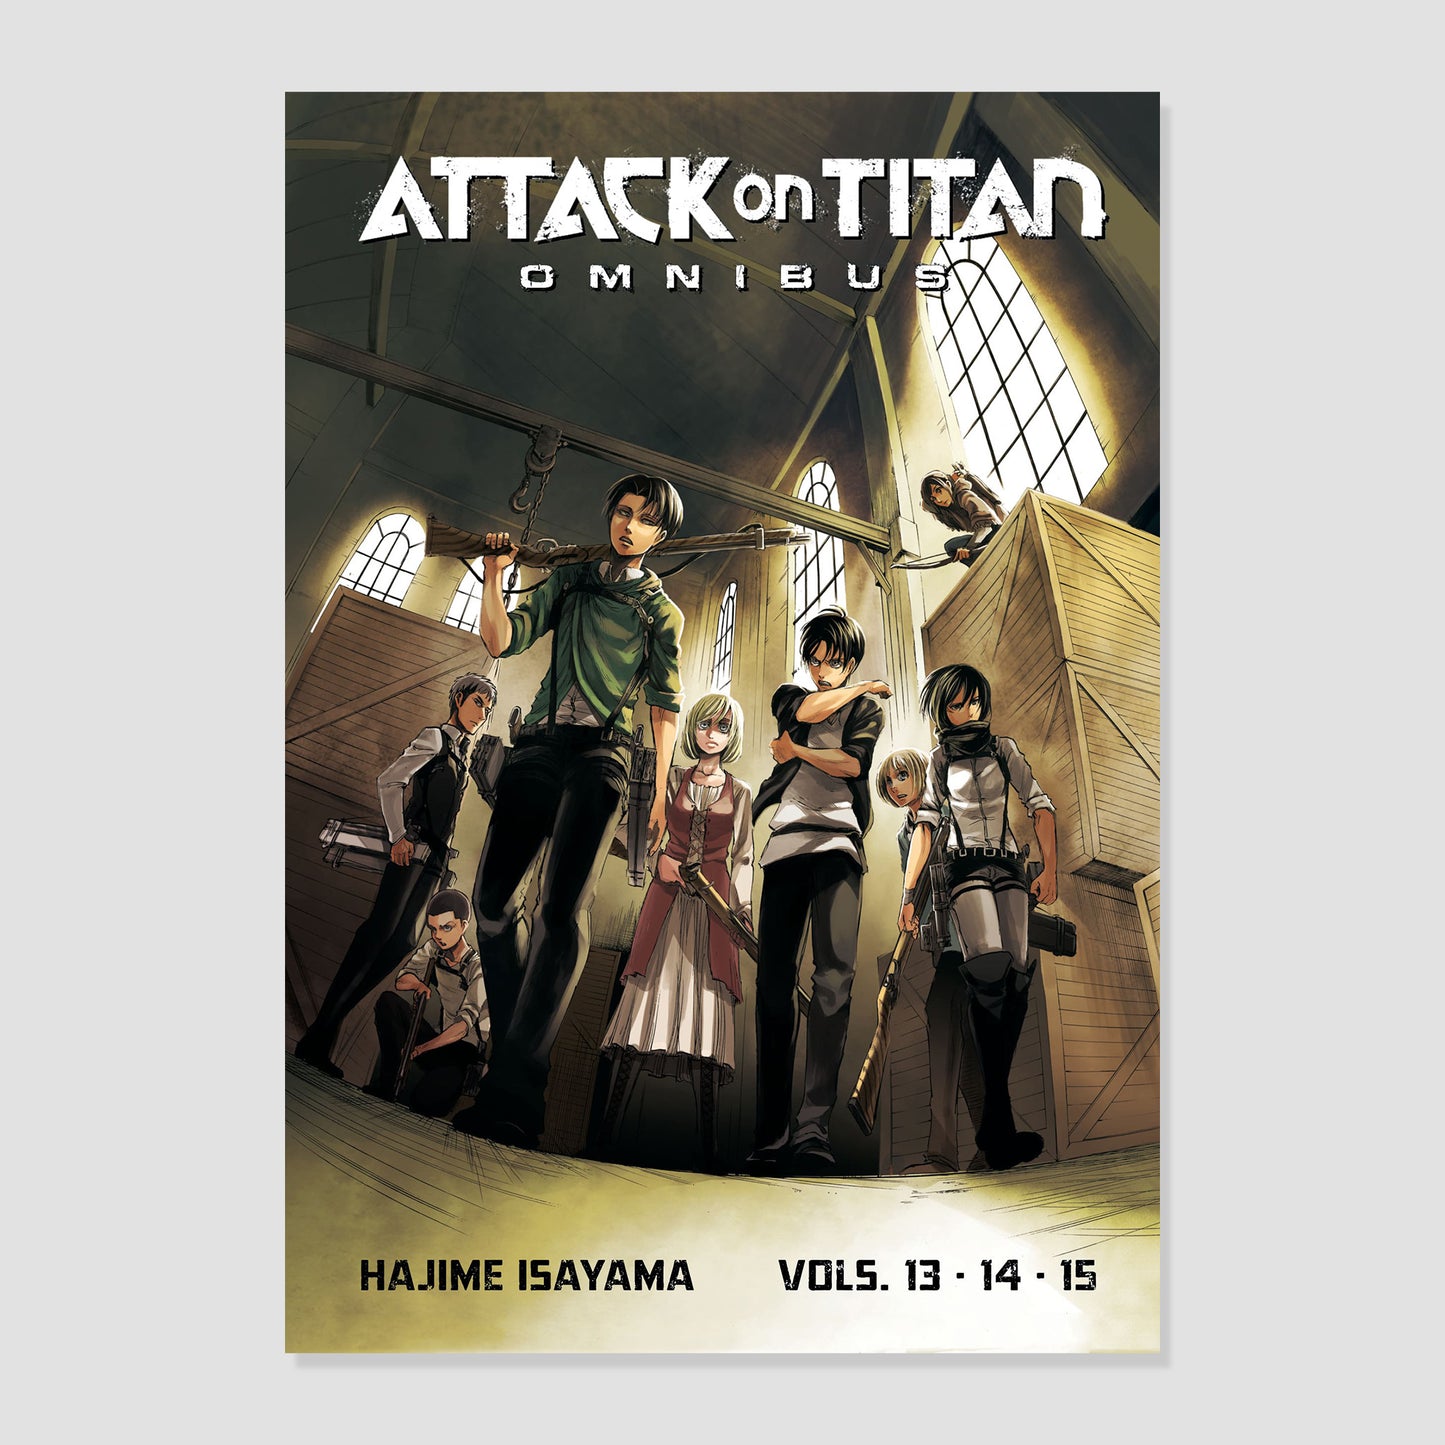 Attack on Titan Omnibus 5 (Vol. 13-15) Paperback Manga